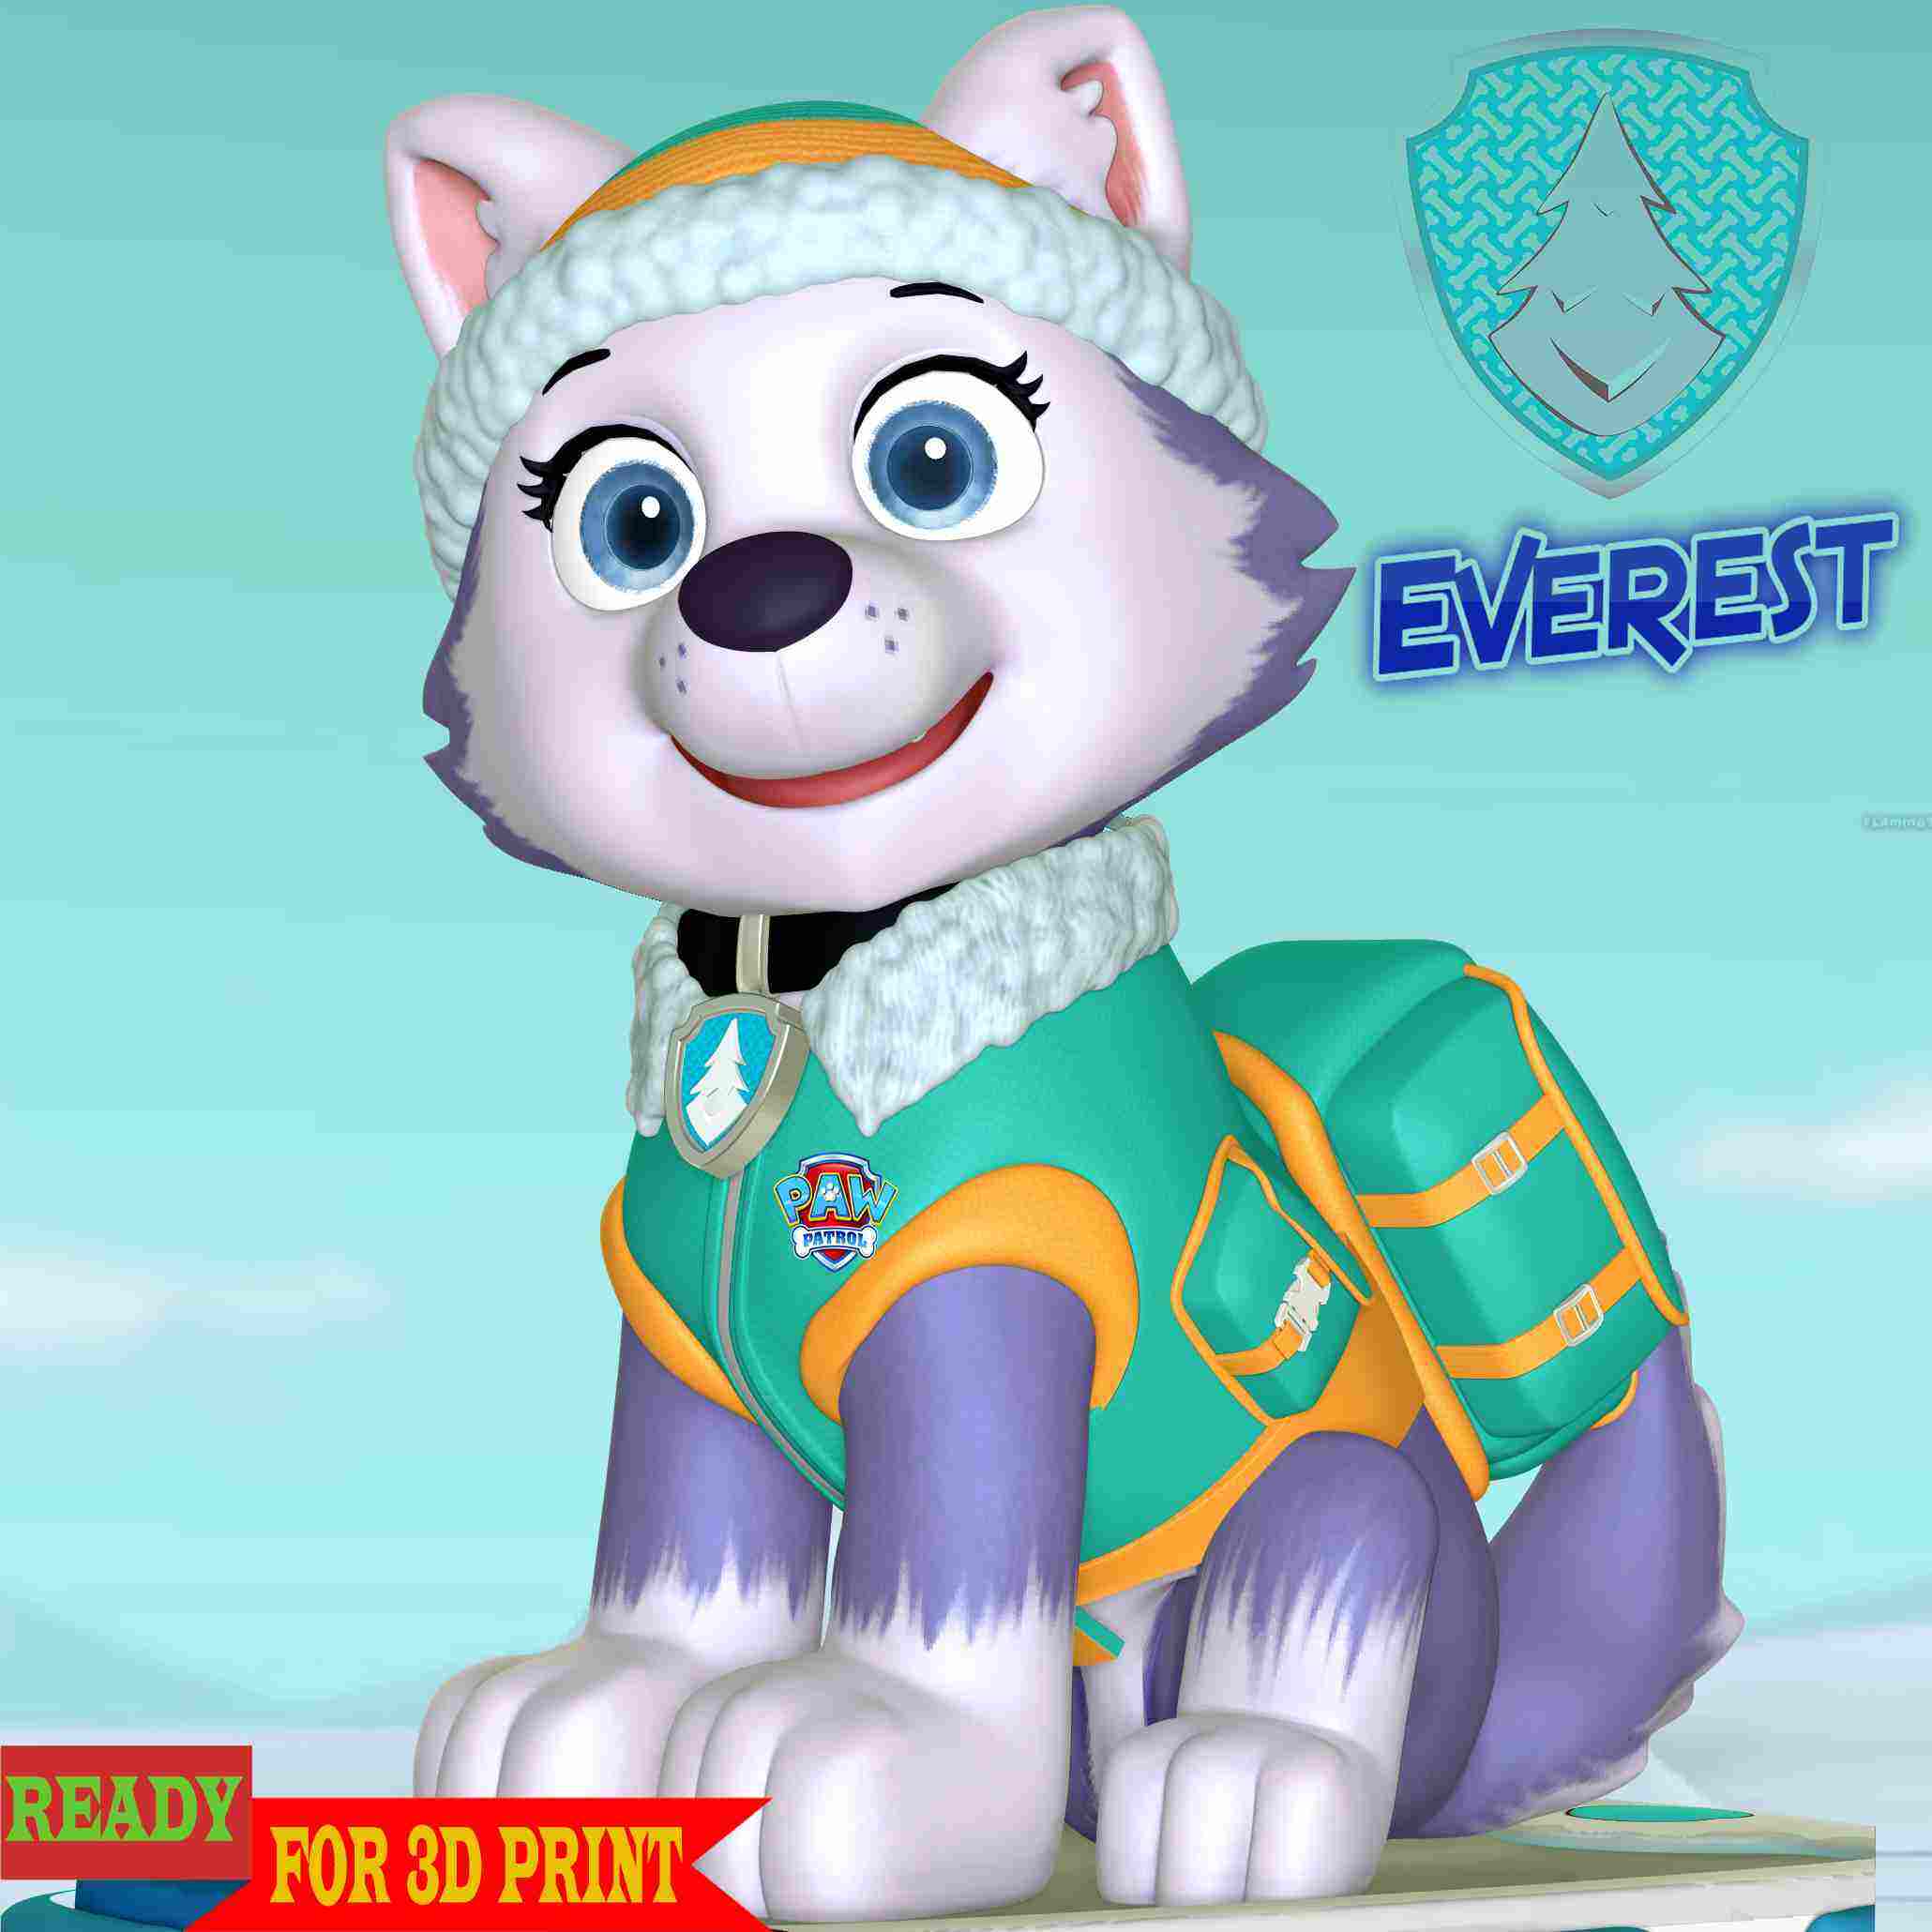 Everest - Paw Patrol, 3D models download